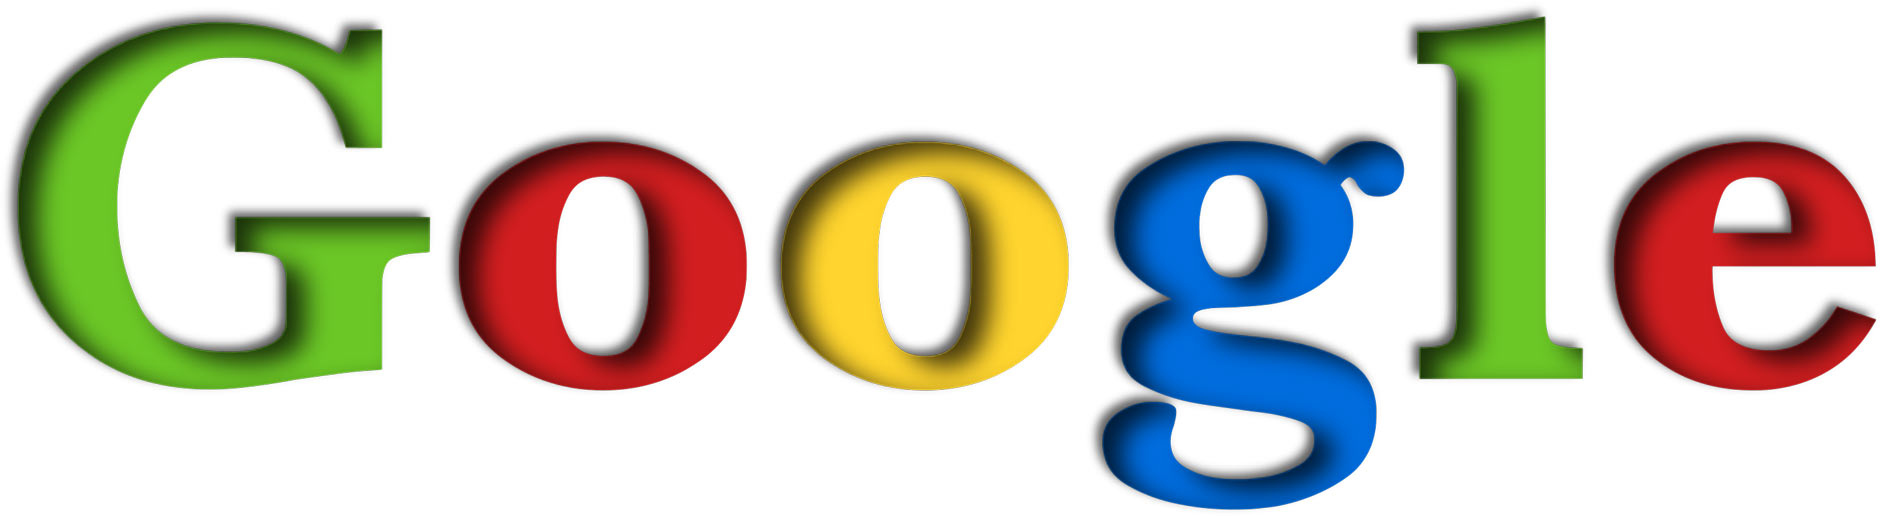 25 anos de Google: 3 sucessos e 2 controvérsias na história do buscador, Mundo